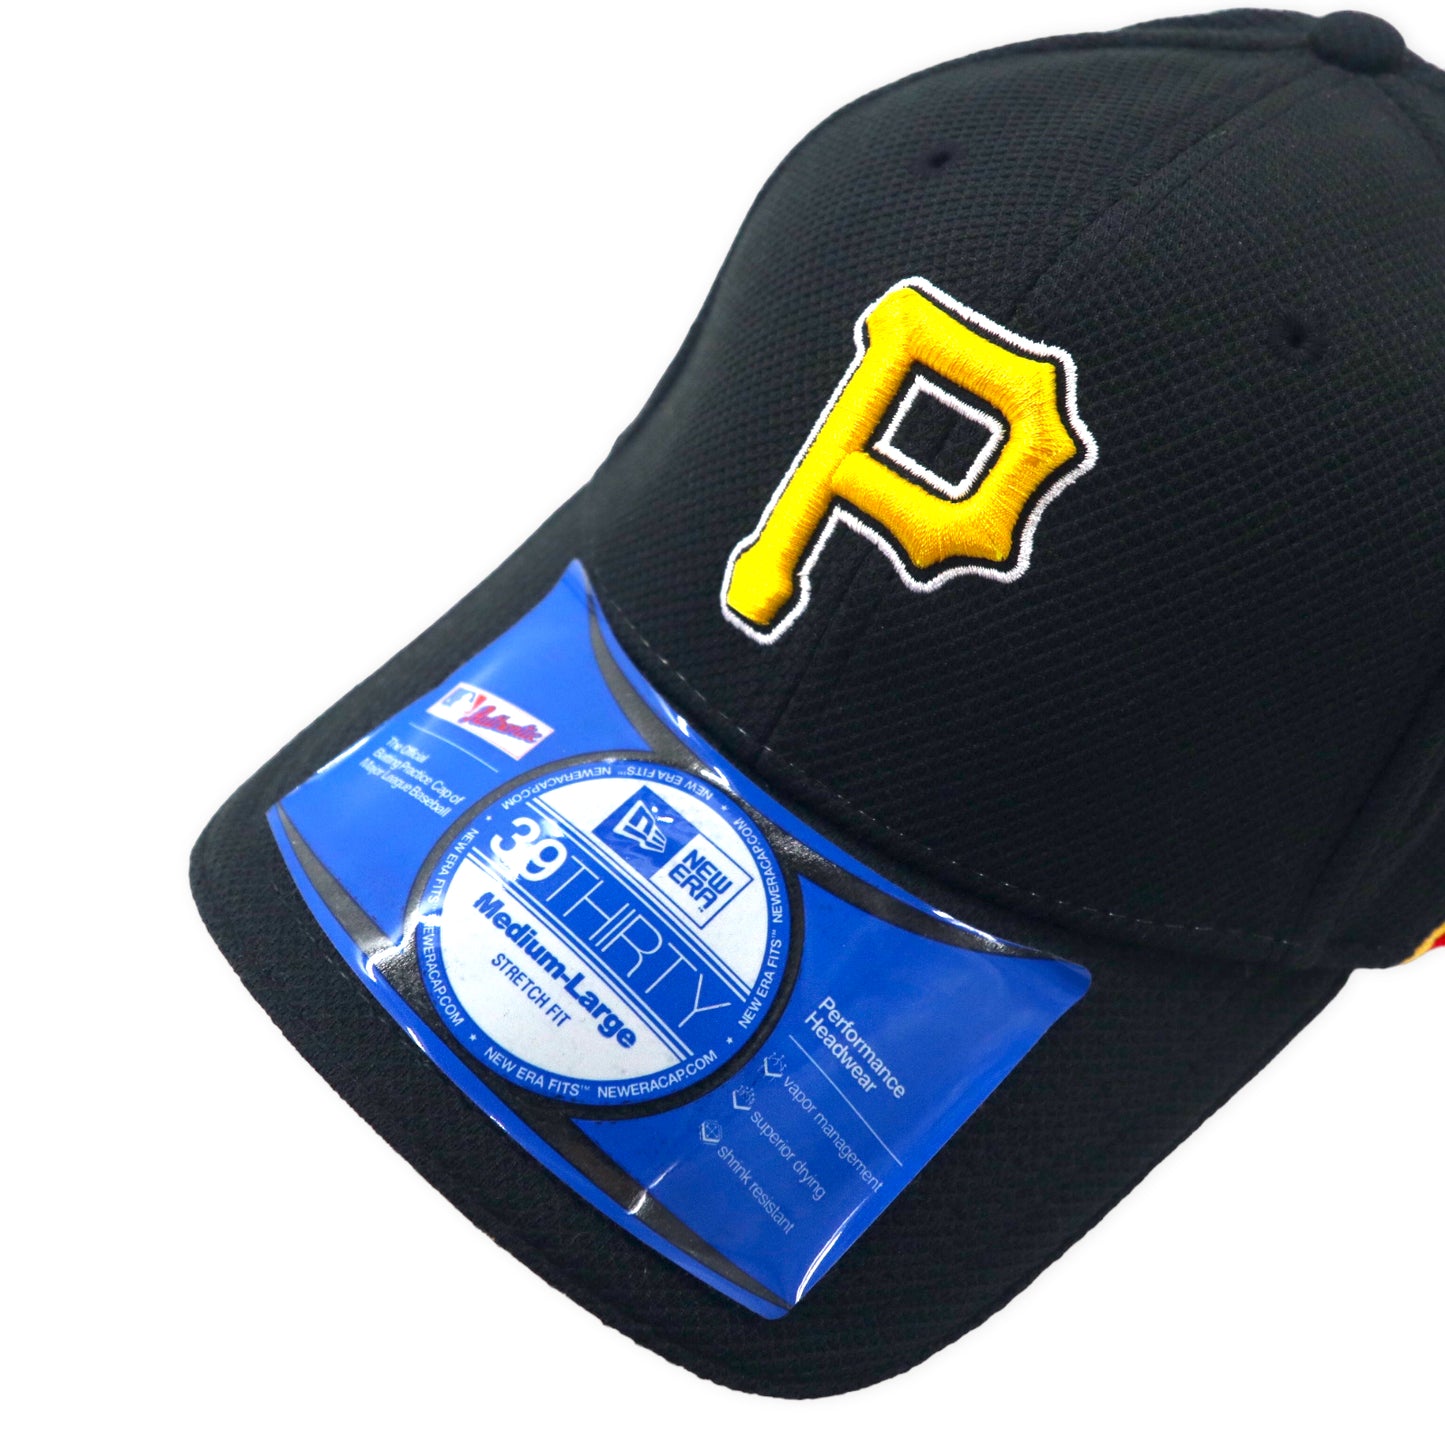 NEWERA ベースボールキャップ M/L ブラック MLB Pittsburgh Pirates ピッツバーグ パイレーツ PERFORMANCE HEADWEAR 未使用品